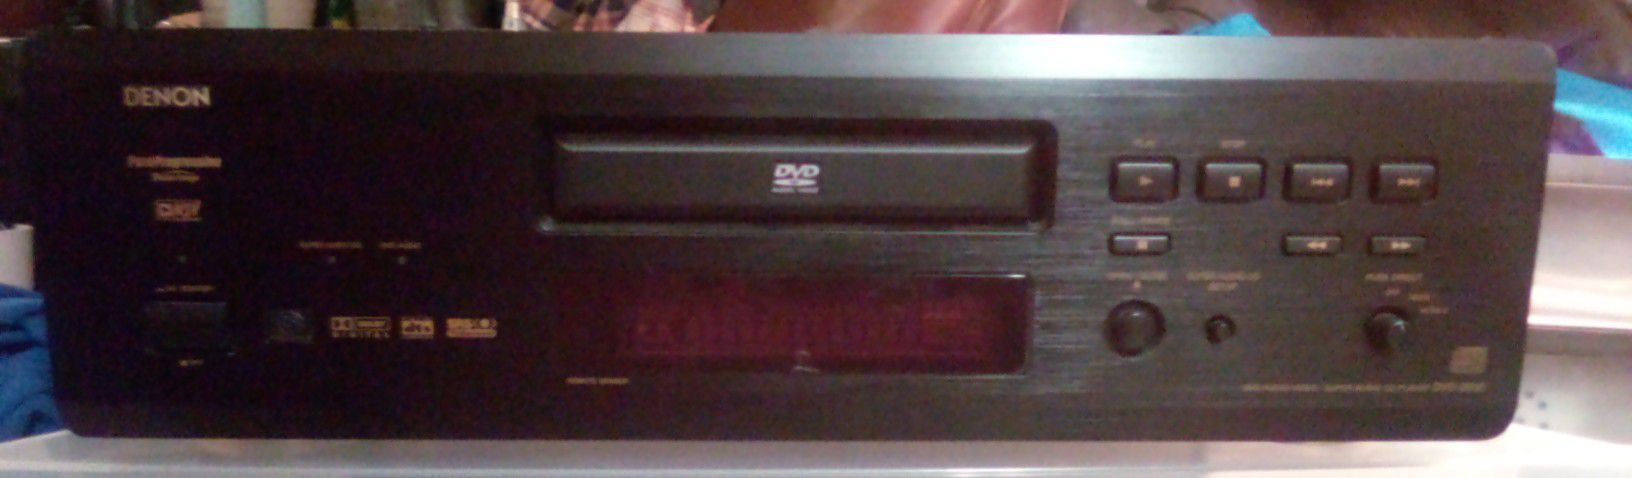 Denon DVD/CD Player Model Number 2900 Vintage